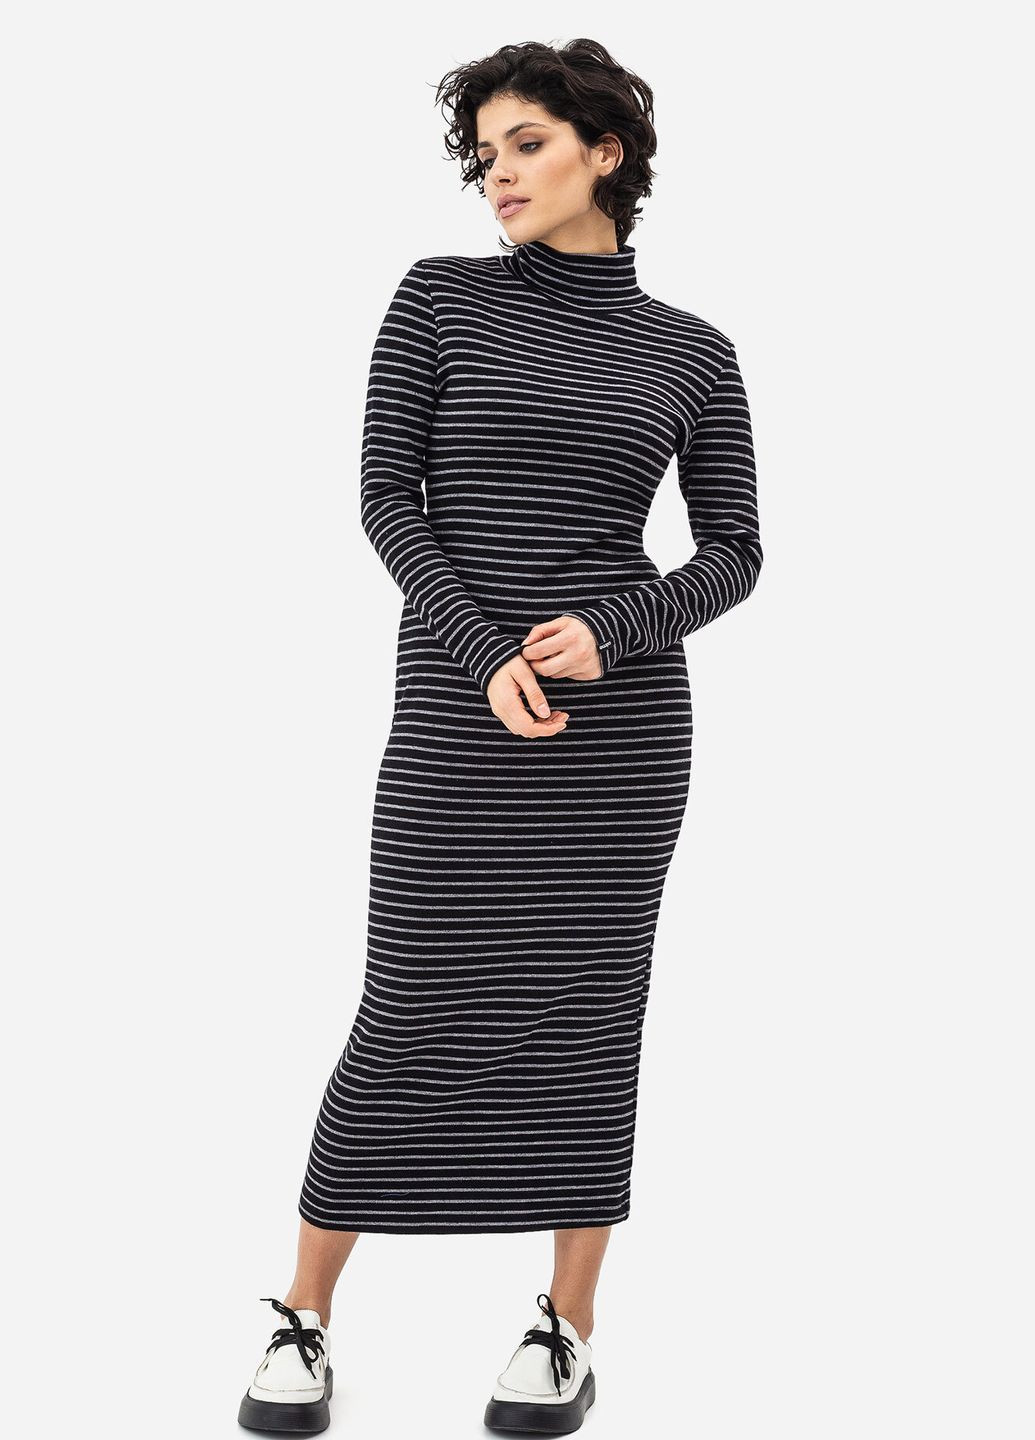 Черное кэжуал платье flori-1 платье-водолазка Garne в полоску